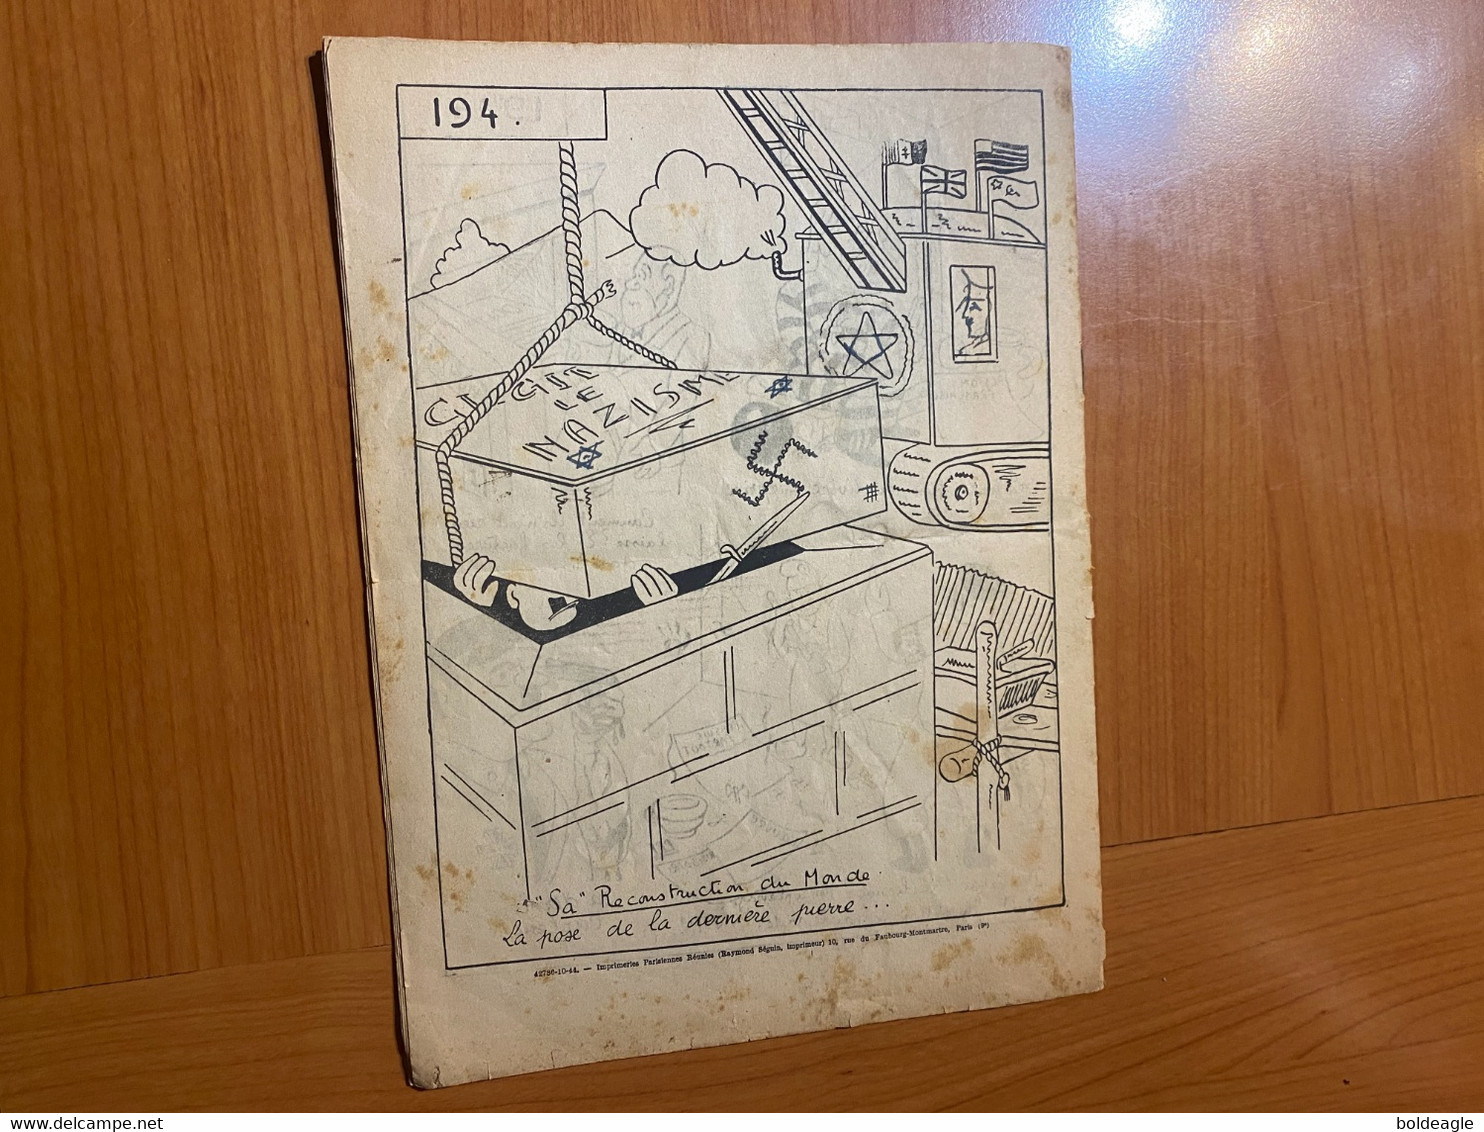 Journal de propagande 1939/1944-Dans la poubelle conçu et dessiné par ALRY ( voire scan)